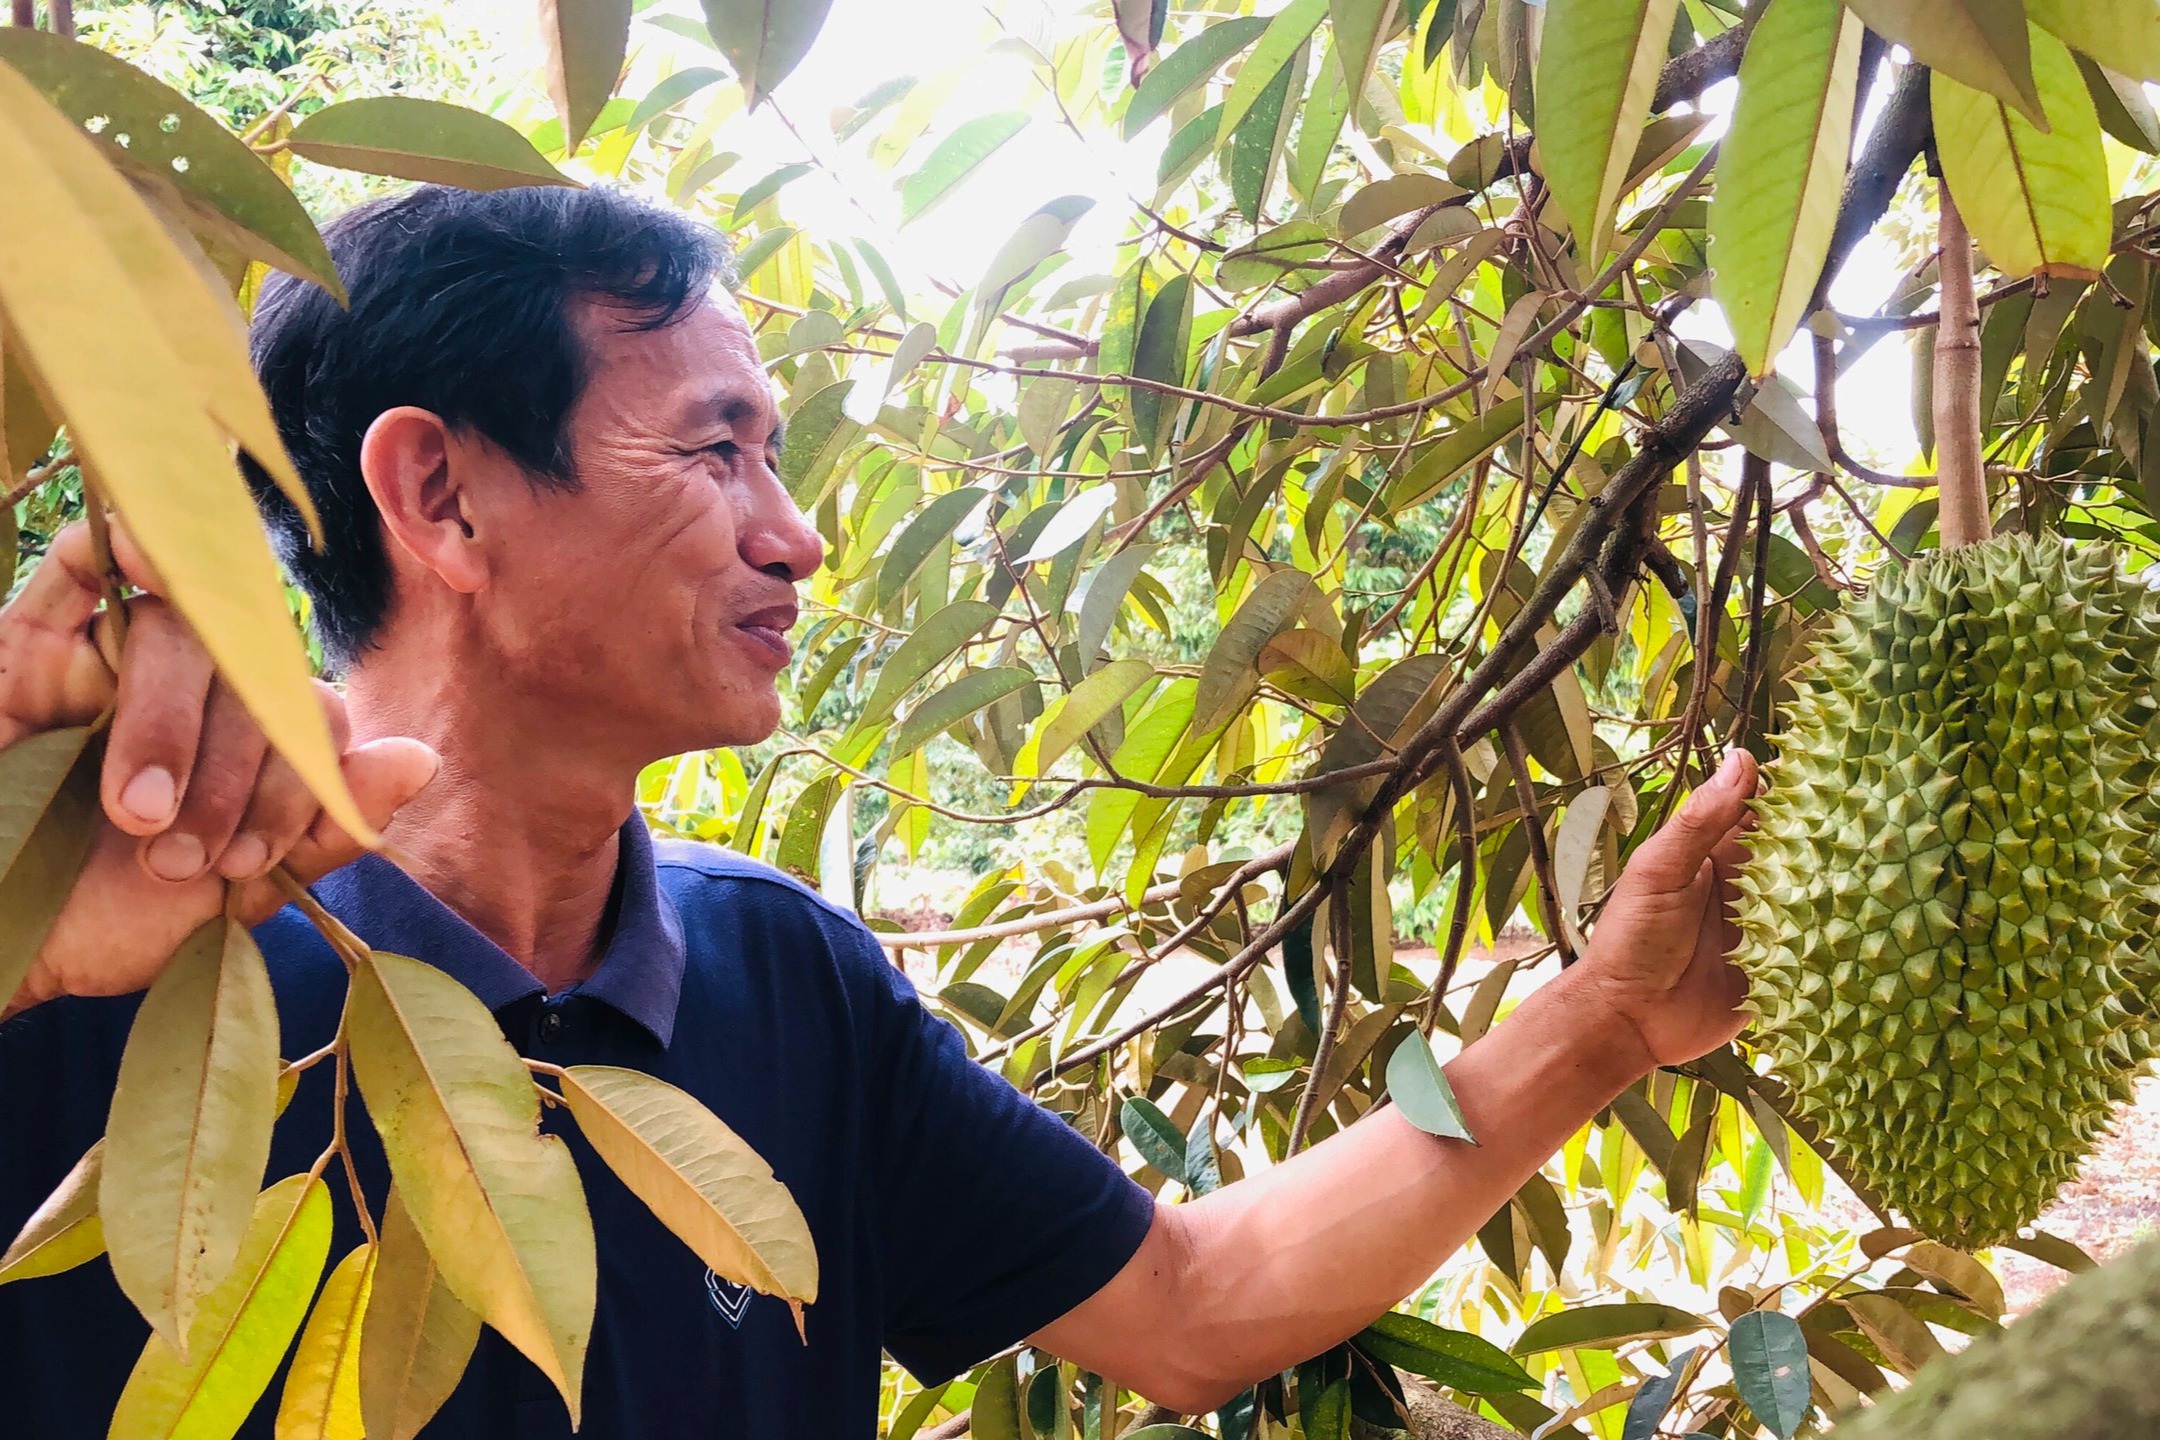 Xen canh trồng cà phê và cây ăn quả, lão nông Gia Lai kiếm tiền tỷ mỗi năm